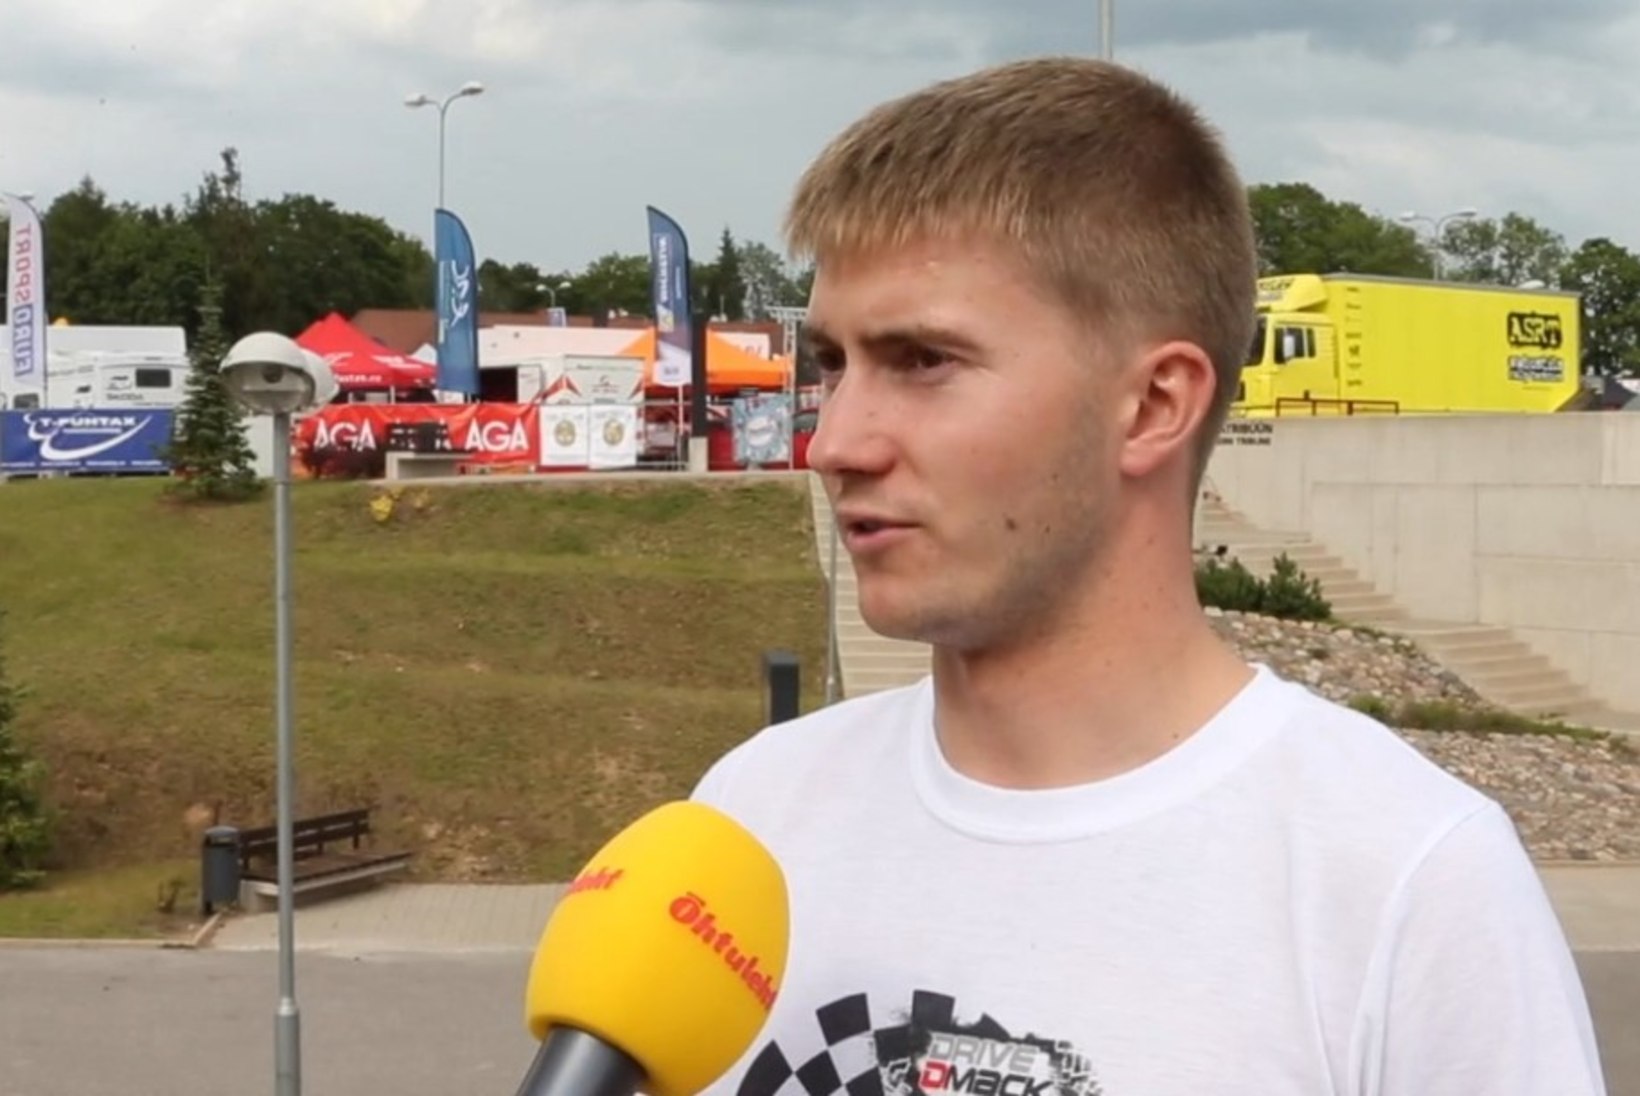 ÕHTULEHE VIDEO | Sander Pärn: loodan väga, et auhinnakapp täieneb võitjakiivriga!